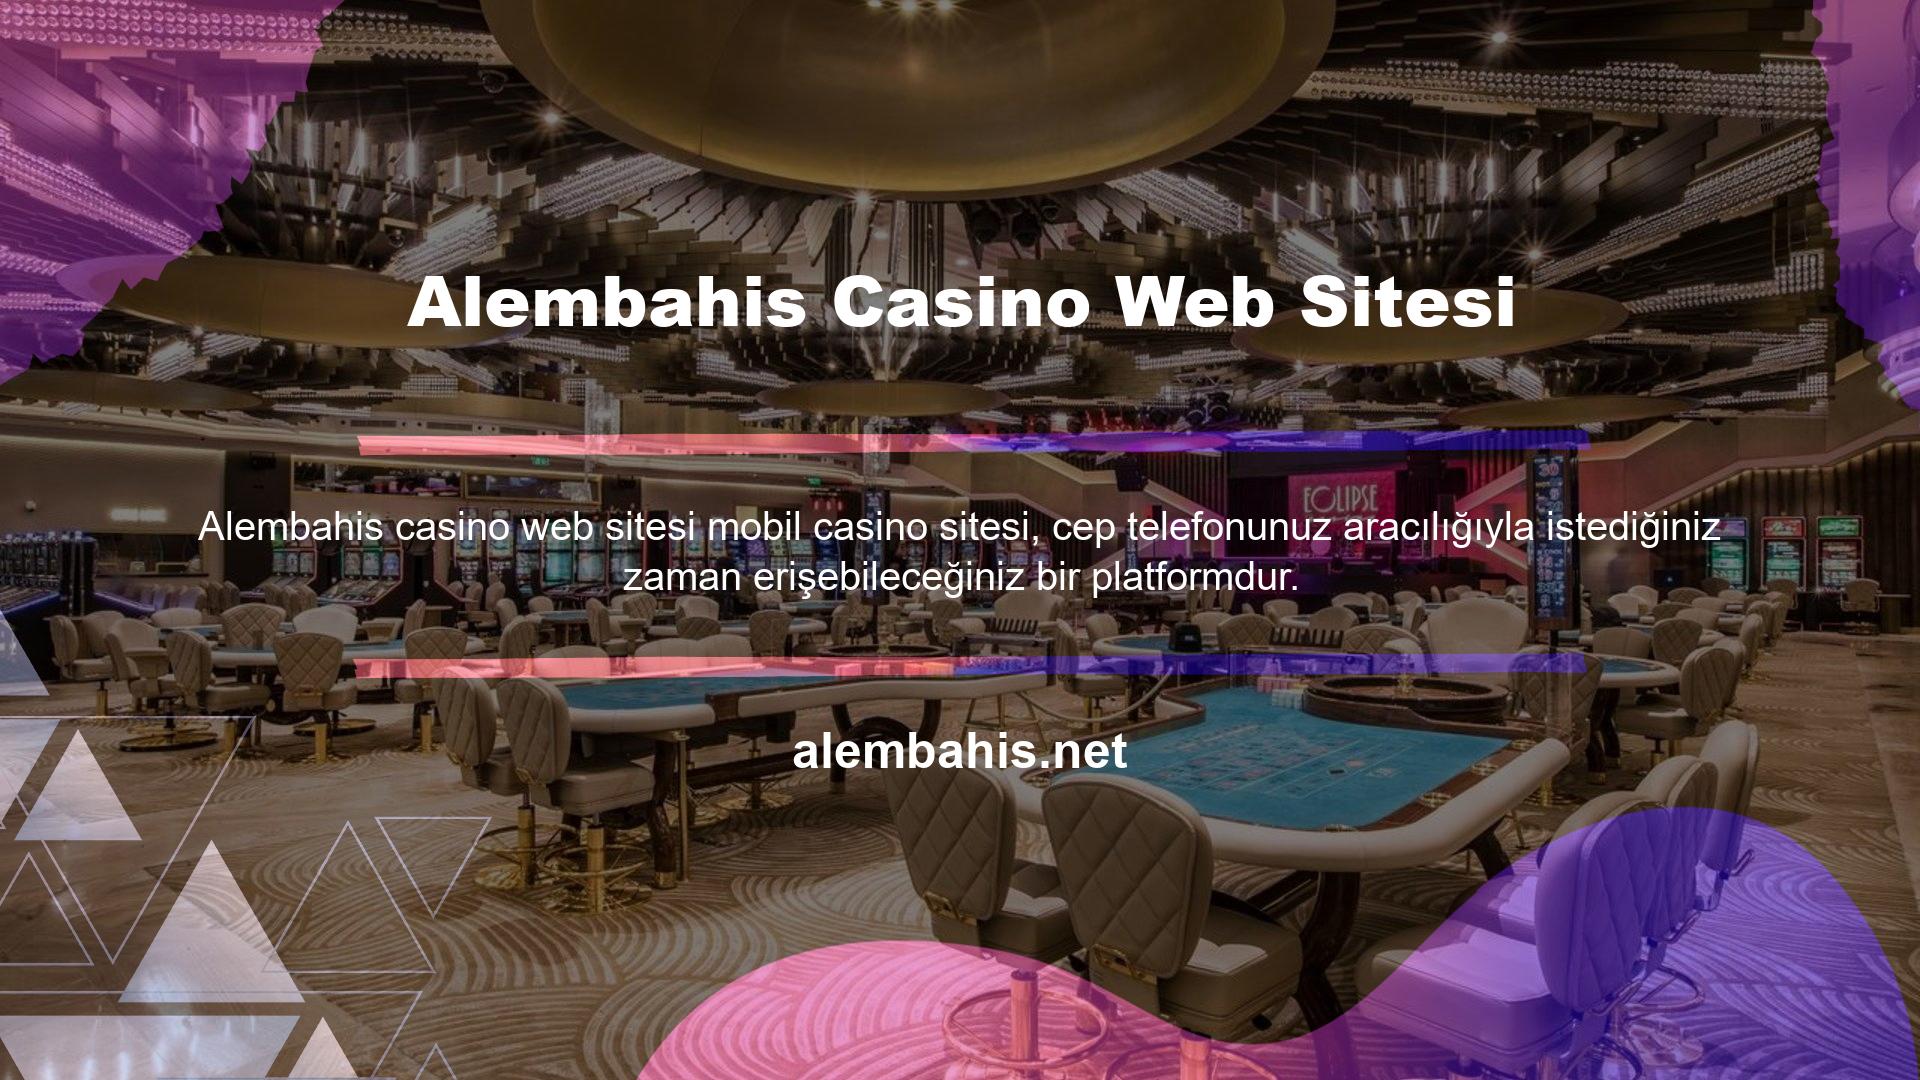 Türk online casino siteleri, bayilerin hizmetlerini Türkçe olarak sunduğu platformları da içerebilir